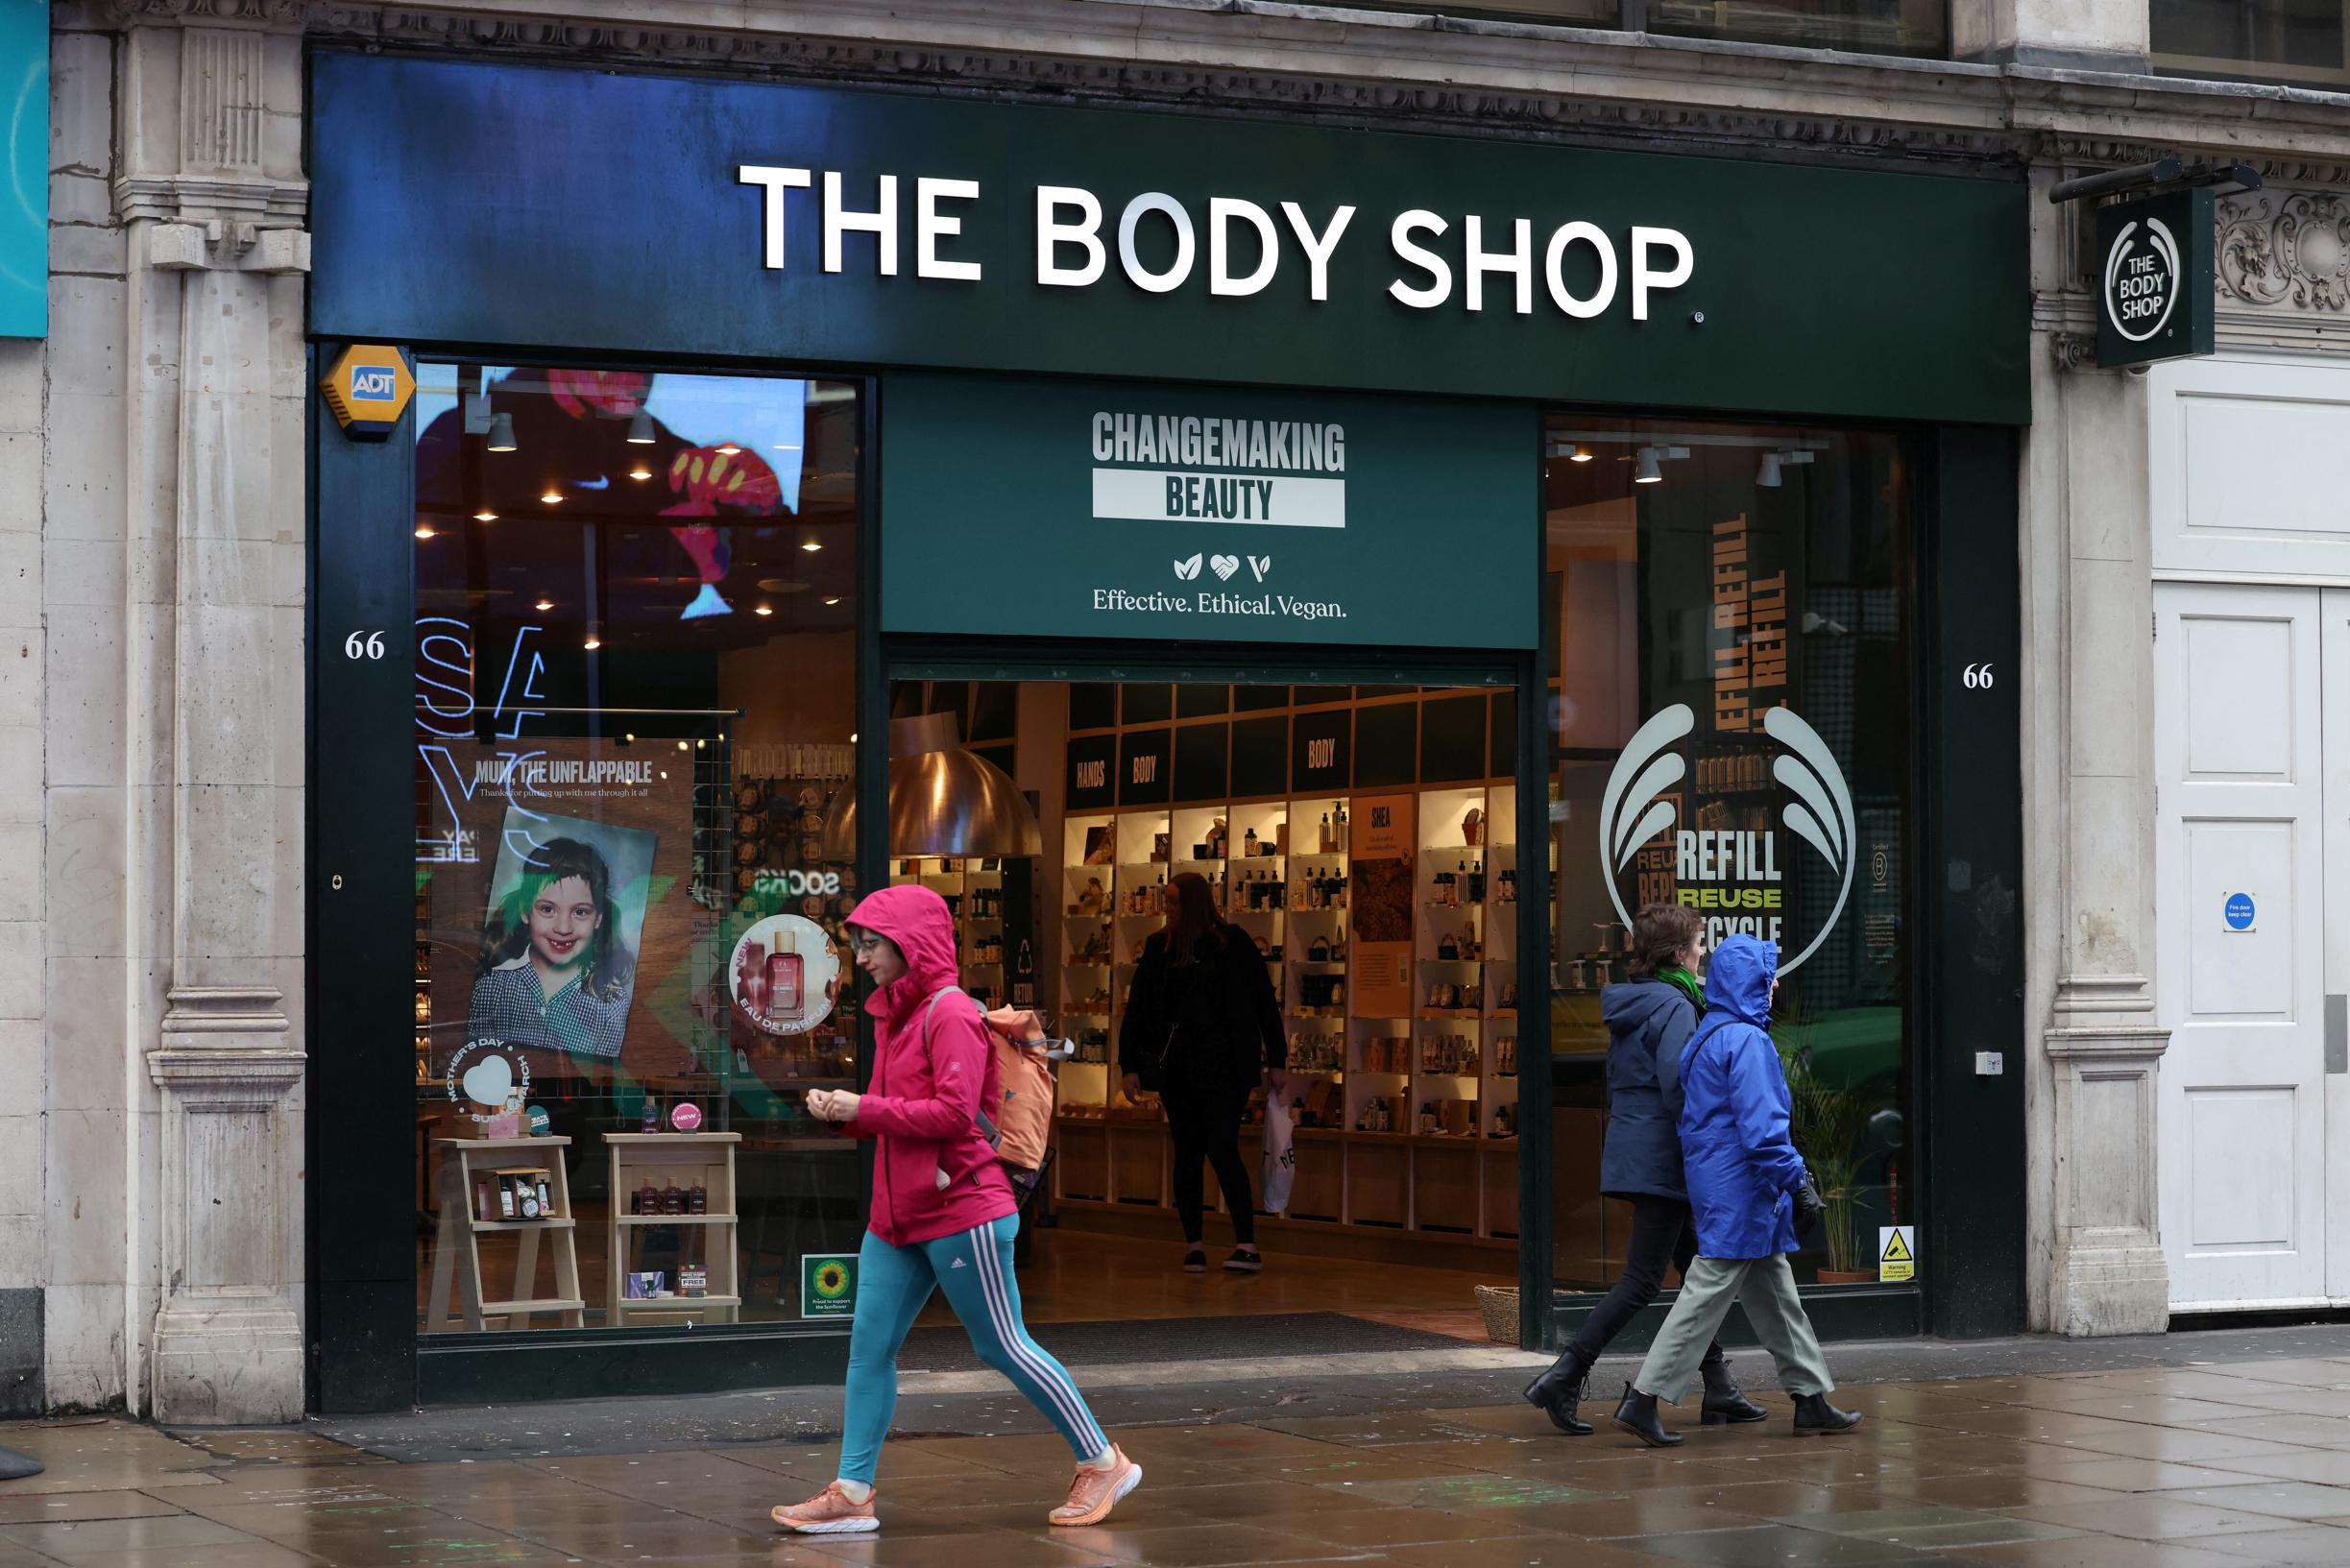 Küratör, The Body Shop Belgium’un geleceğinin belirsiz olduğunu söylüyor;  mağazanın yeniden başlatılması konusunda netlik yok